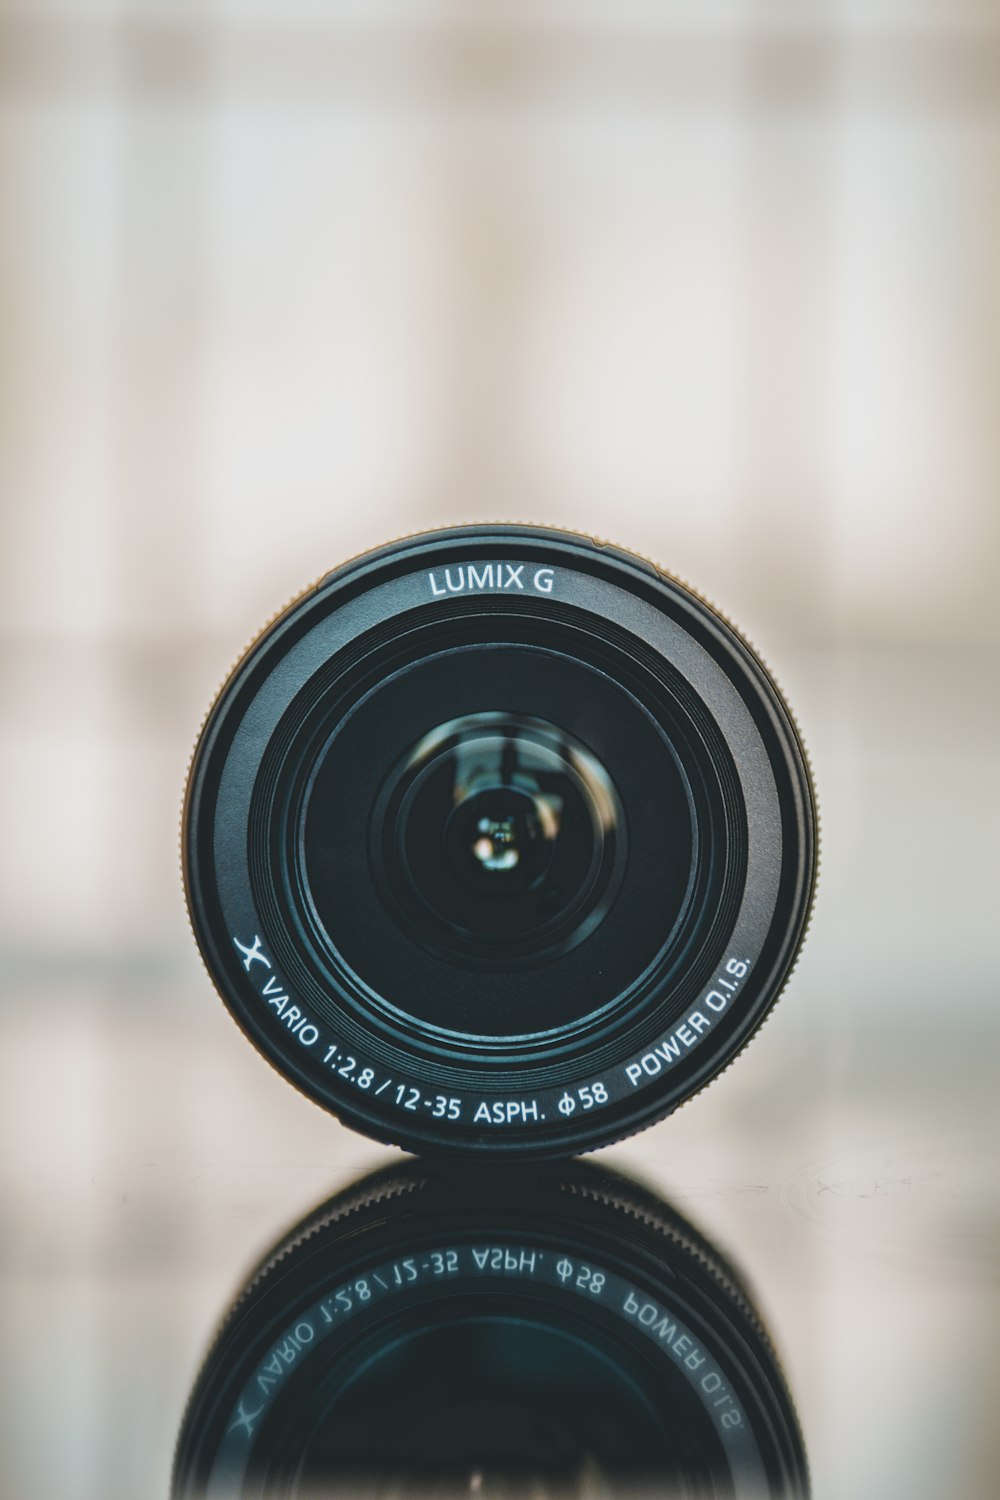 Lumix camera lens